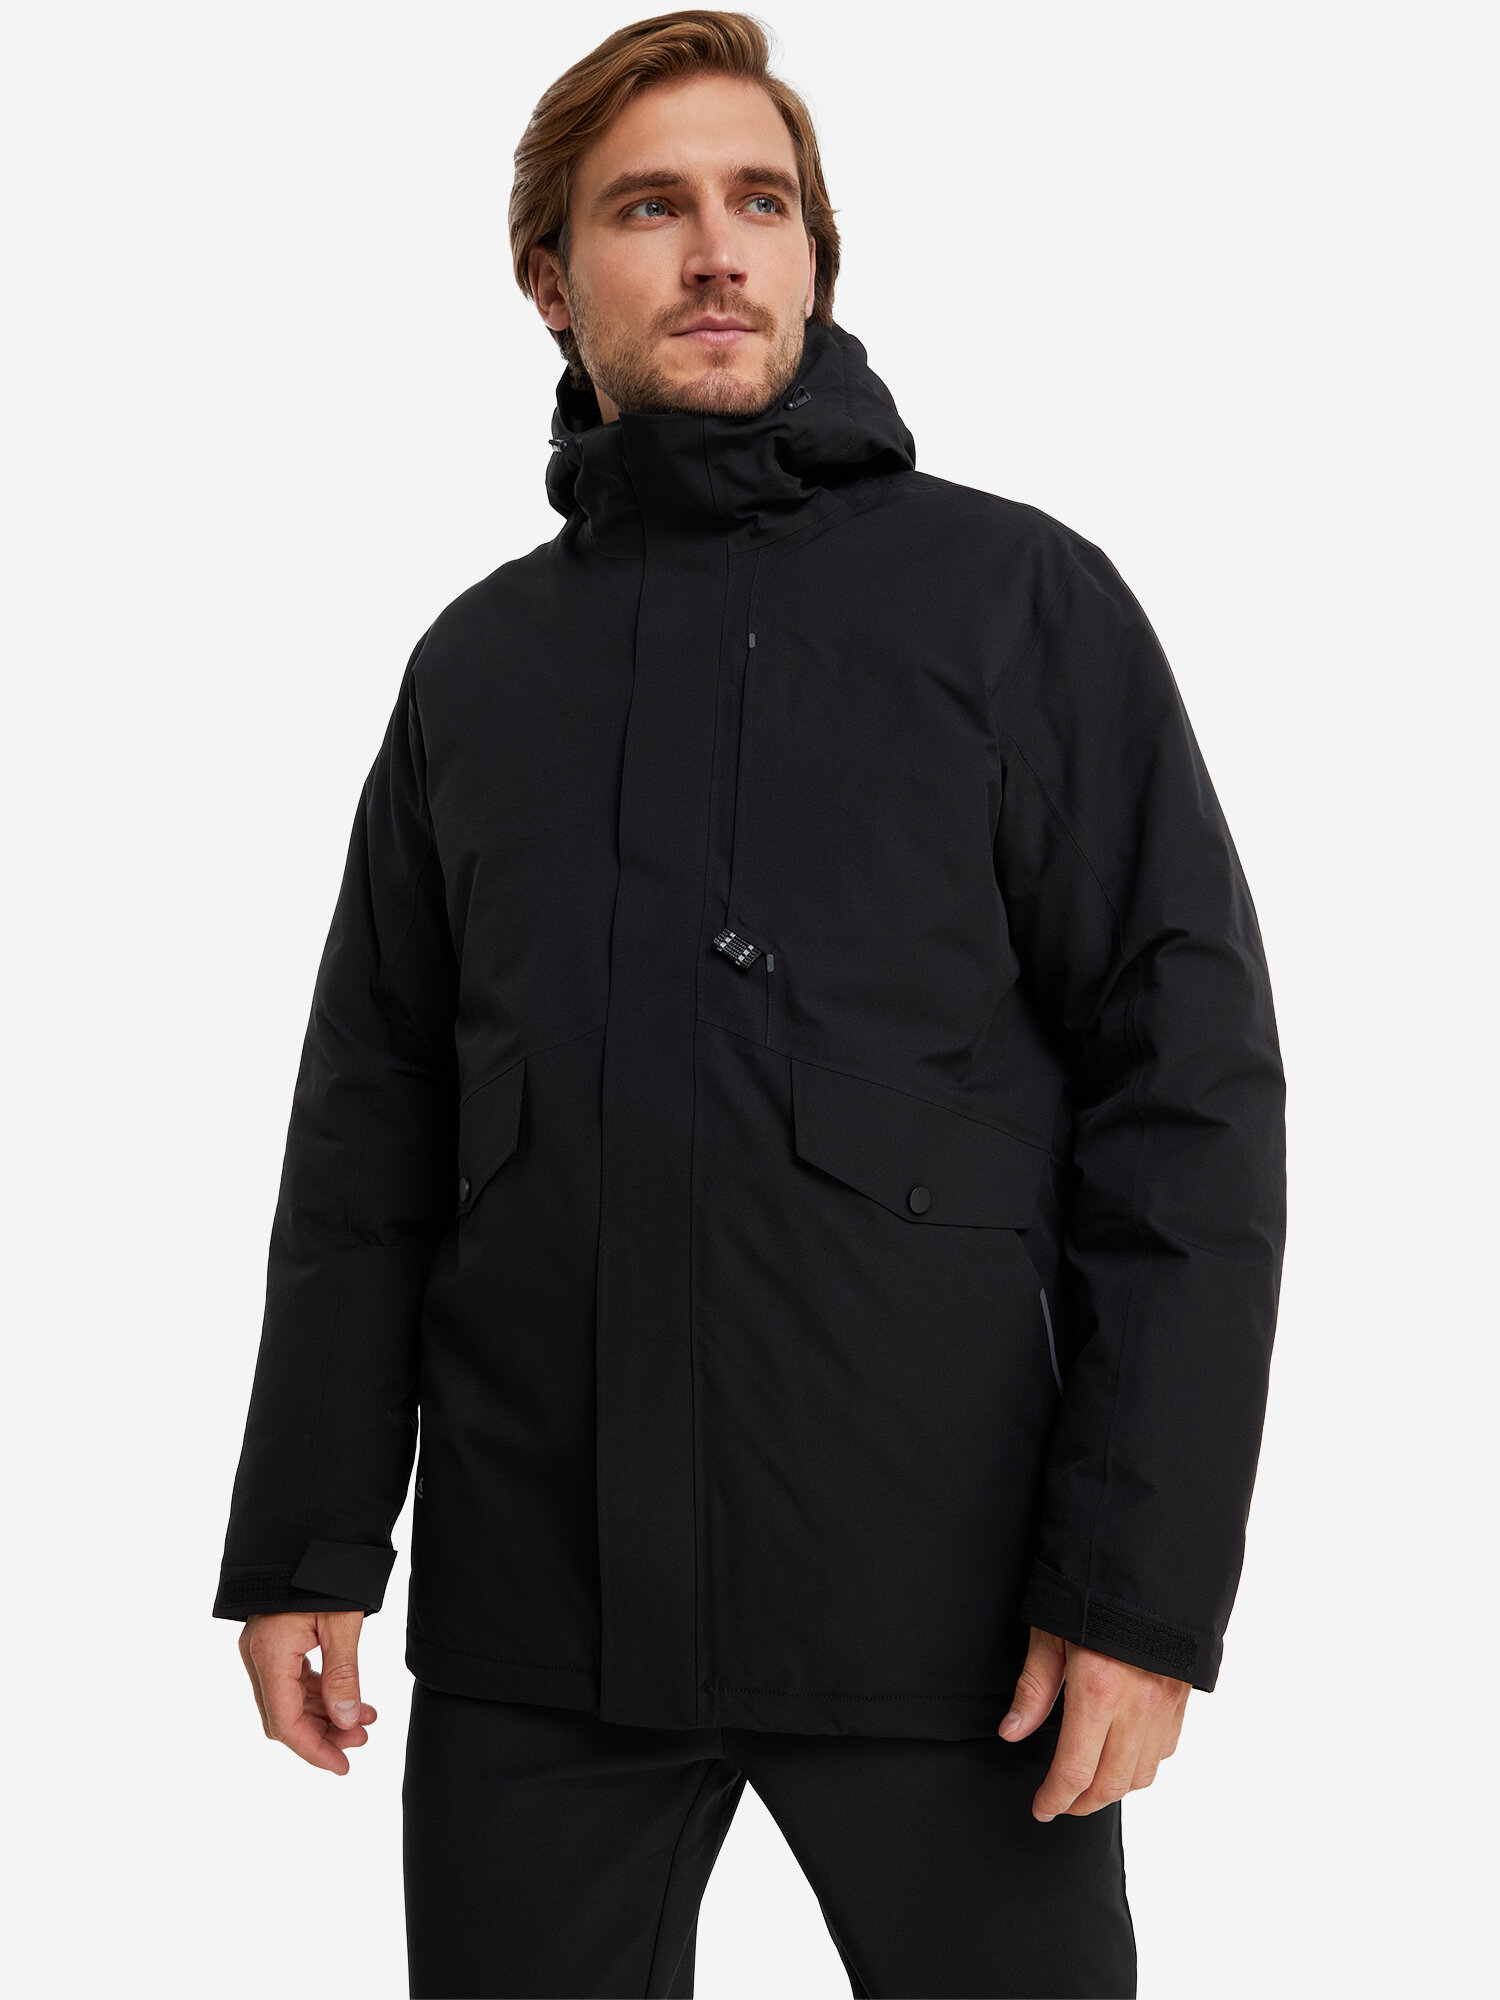 Куртка TOREAD Men's cotton-padded jacket